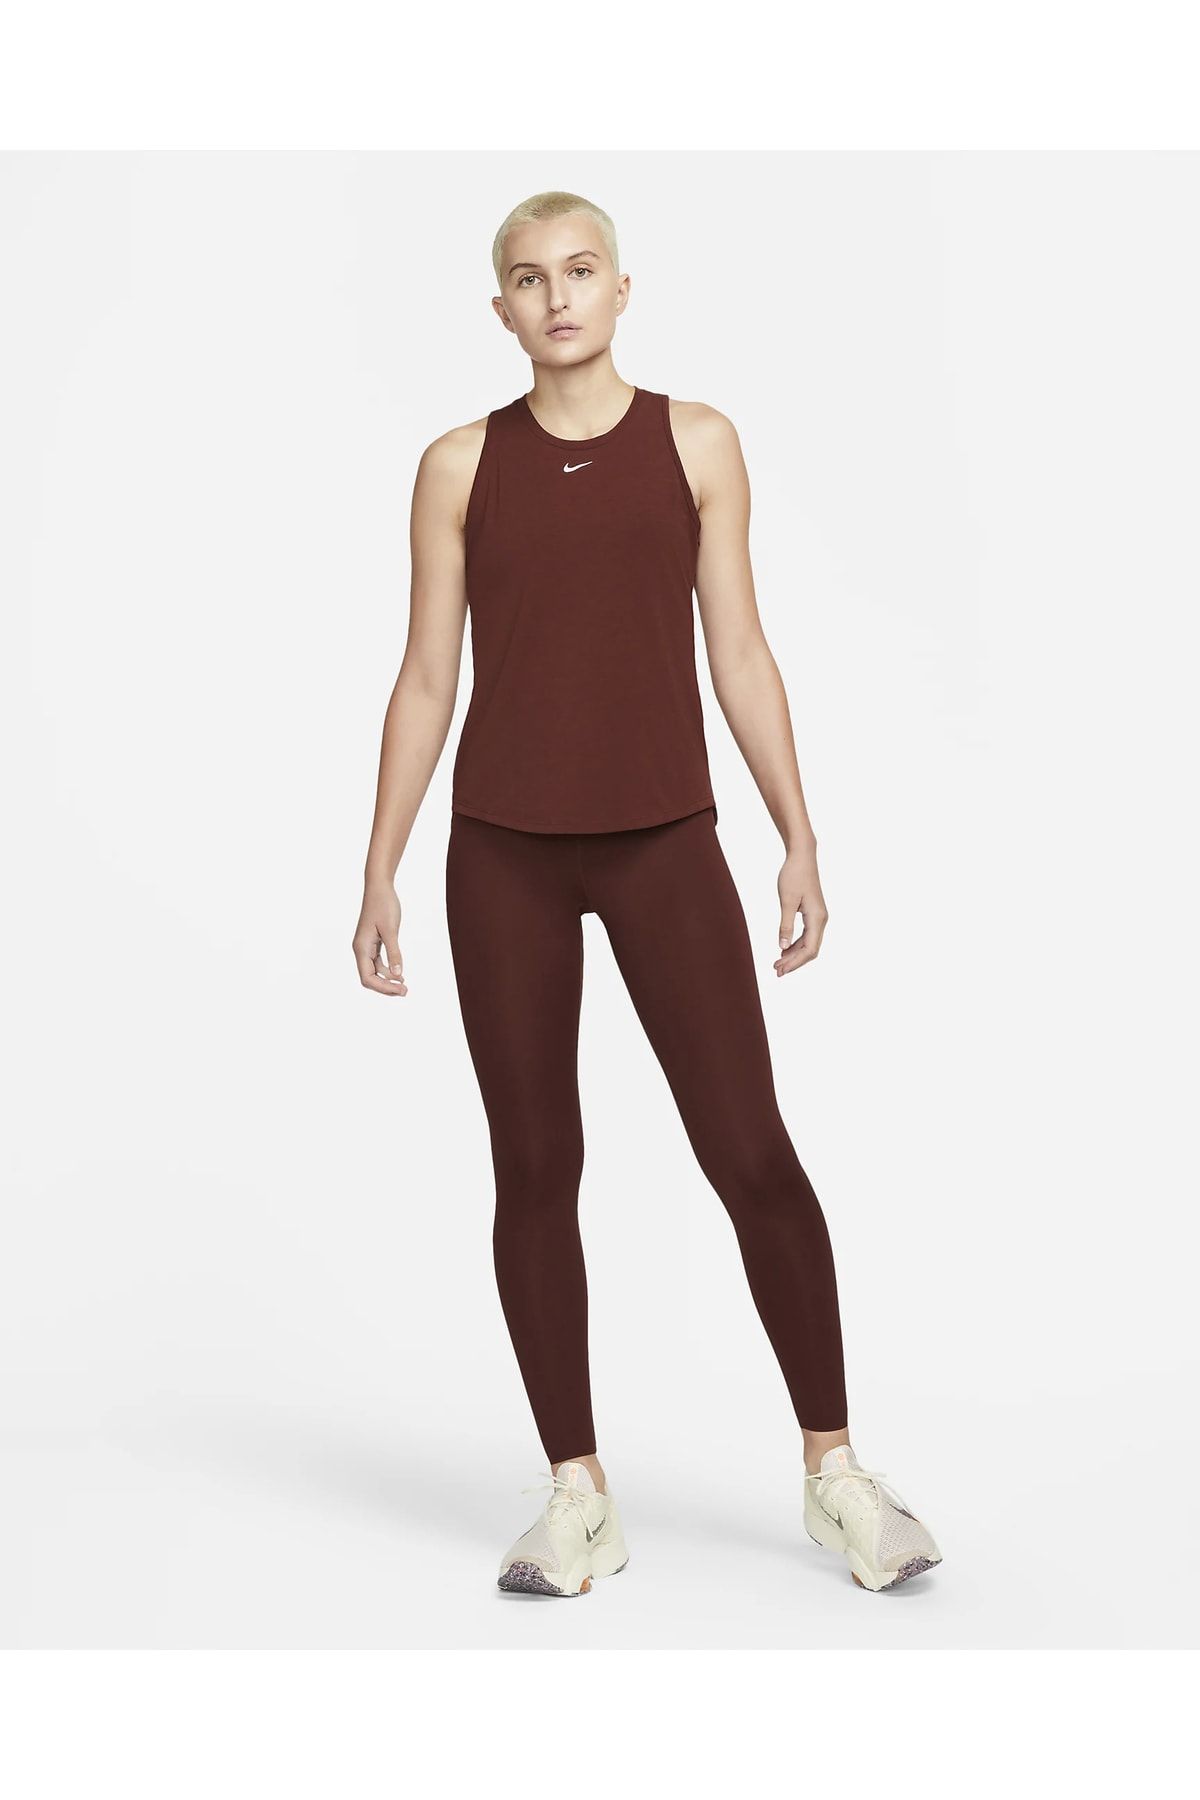 Nike Dri-fıt One Luxe Standart Kesimli Kadın Atleti Dd0615-273